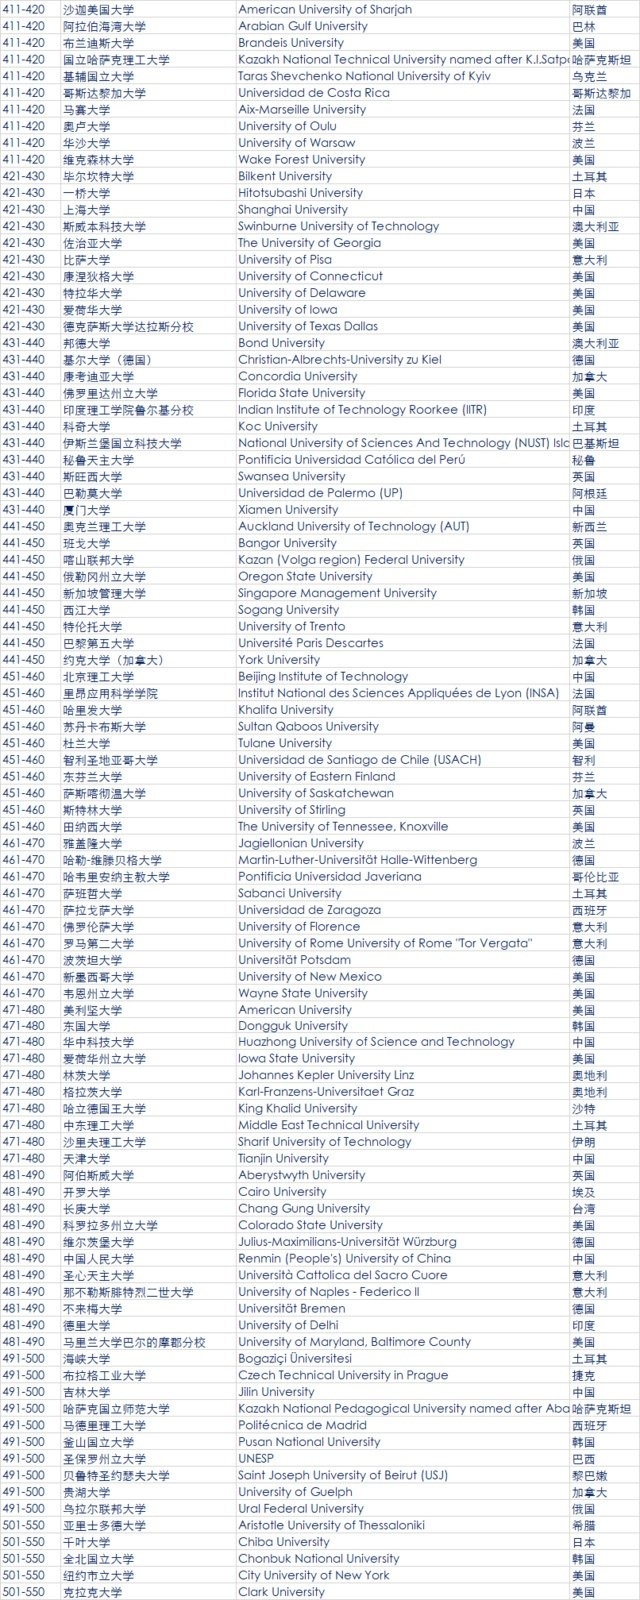 2018年QS世界大学排名发布 中国大陆6所高校进百强5